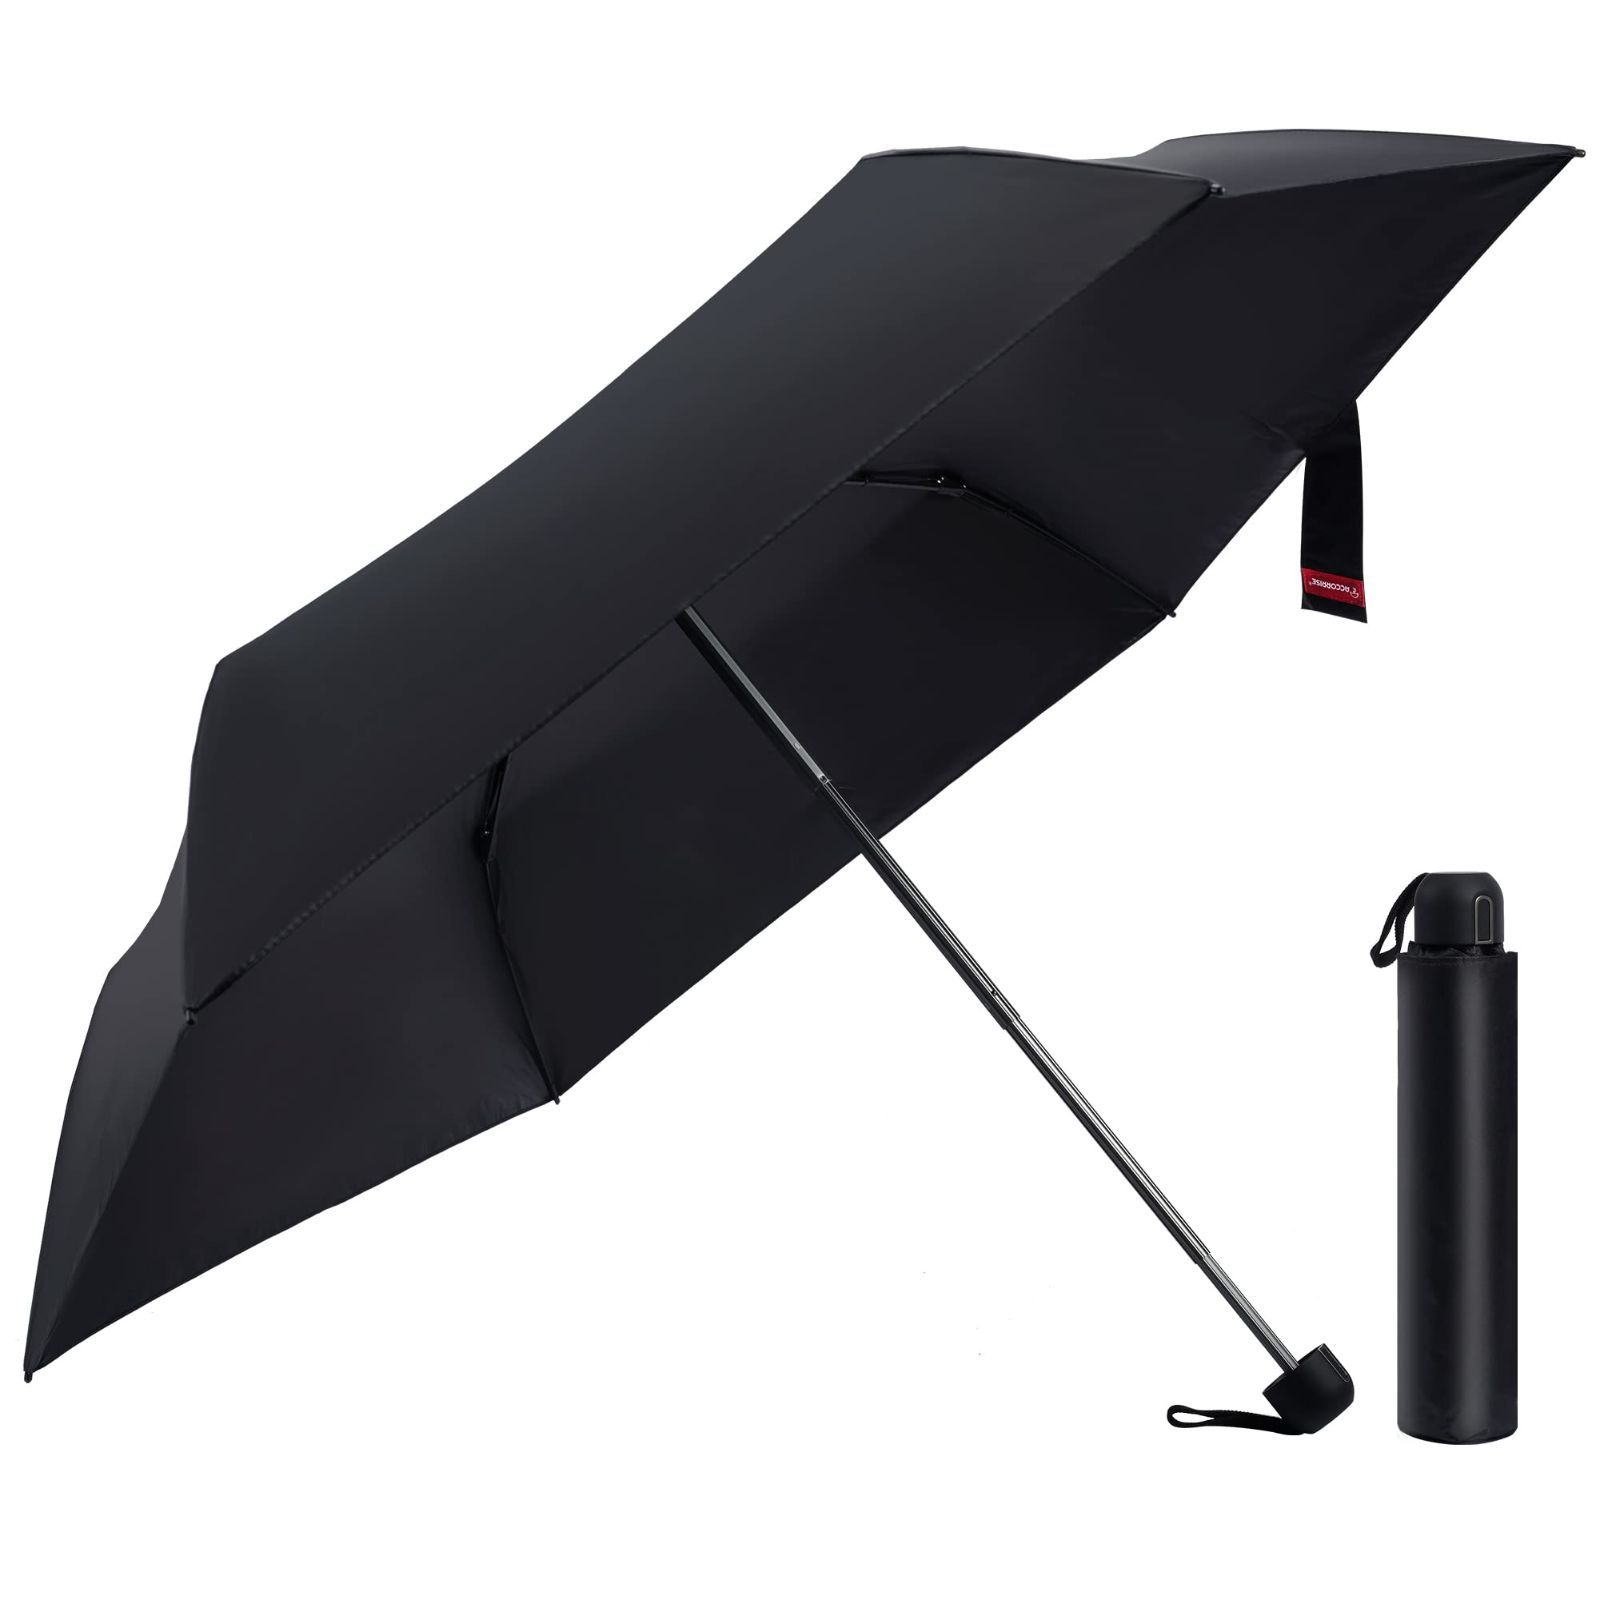 ACCORRISE 折りたたみ傘 日傘 超軽量190g 超撥水 折り畳み傘 持ち